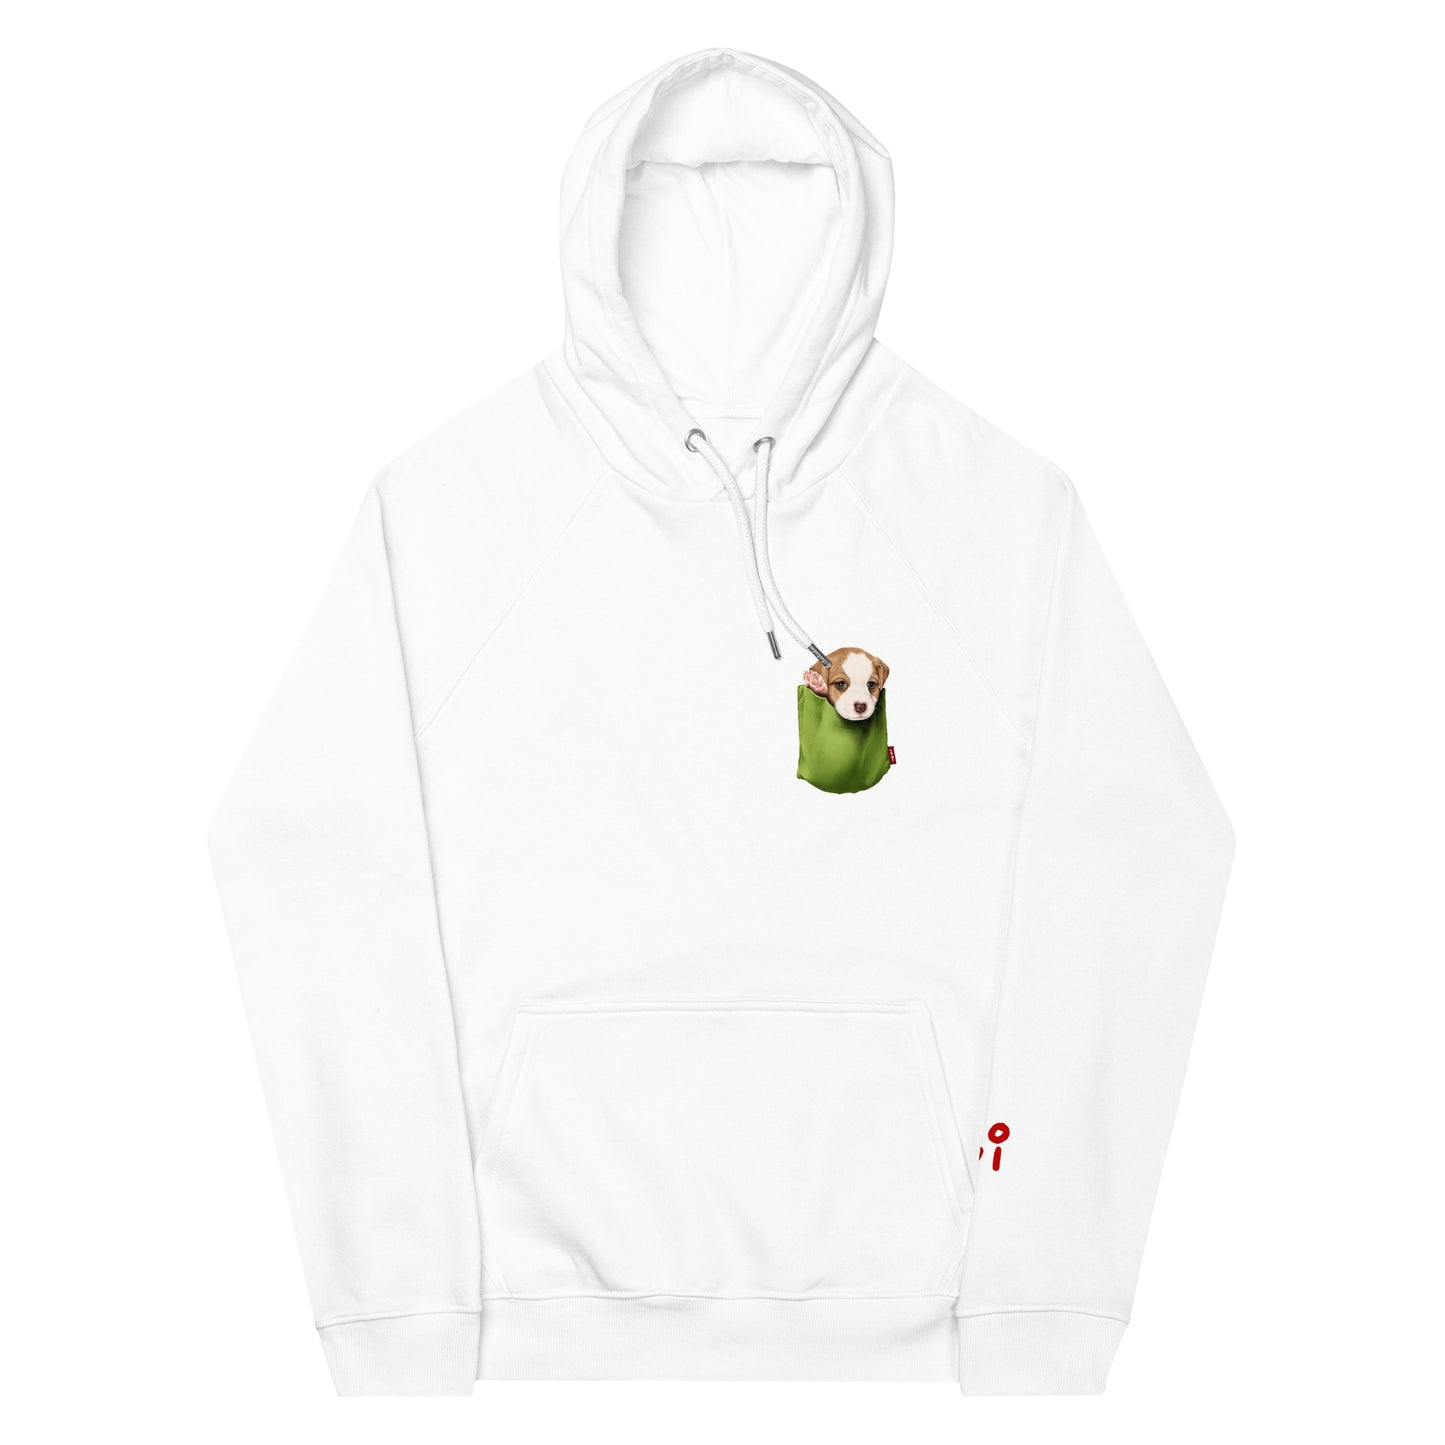 Jack Russell Terrier Unisex eco raglan hoodie